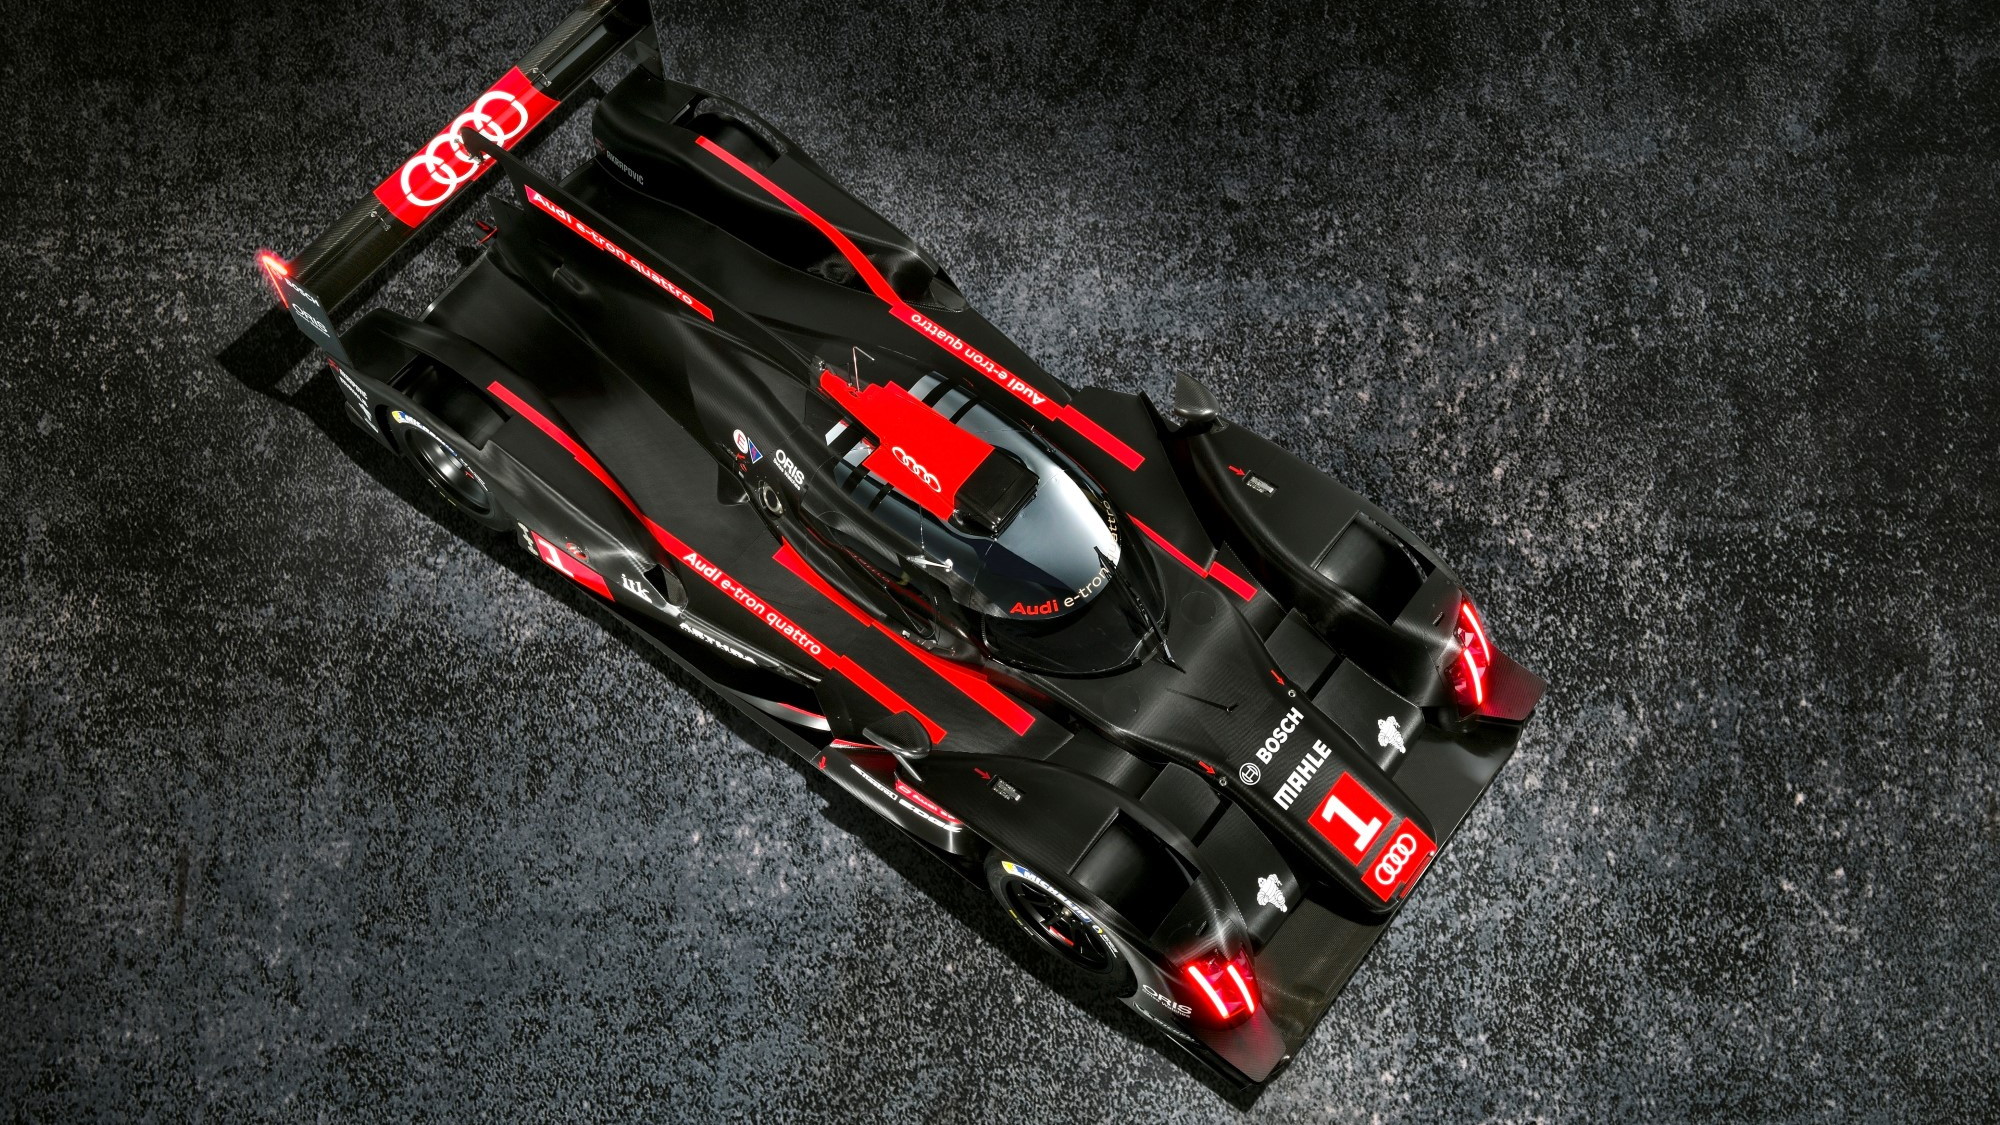 2014 Audi R18 e-tron quattro Le Mans Prototype race car